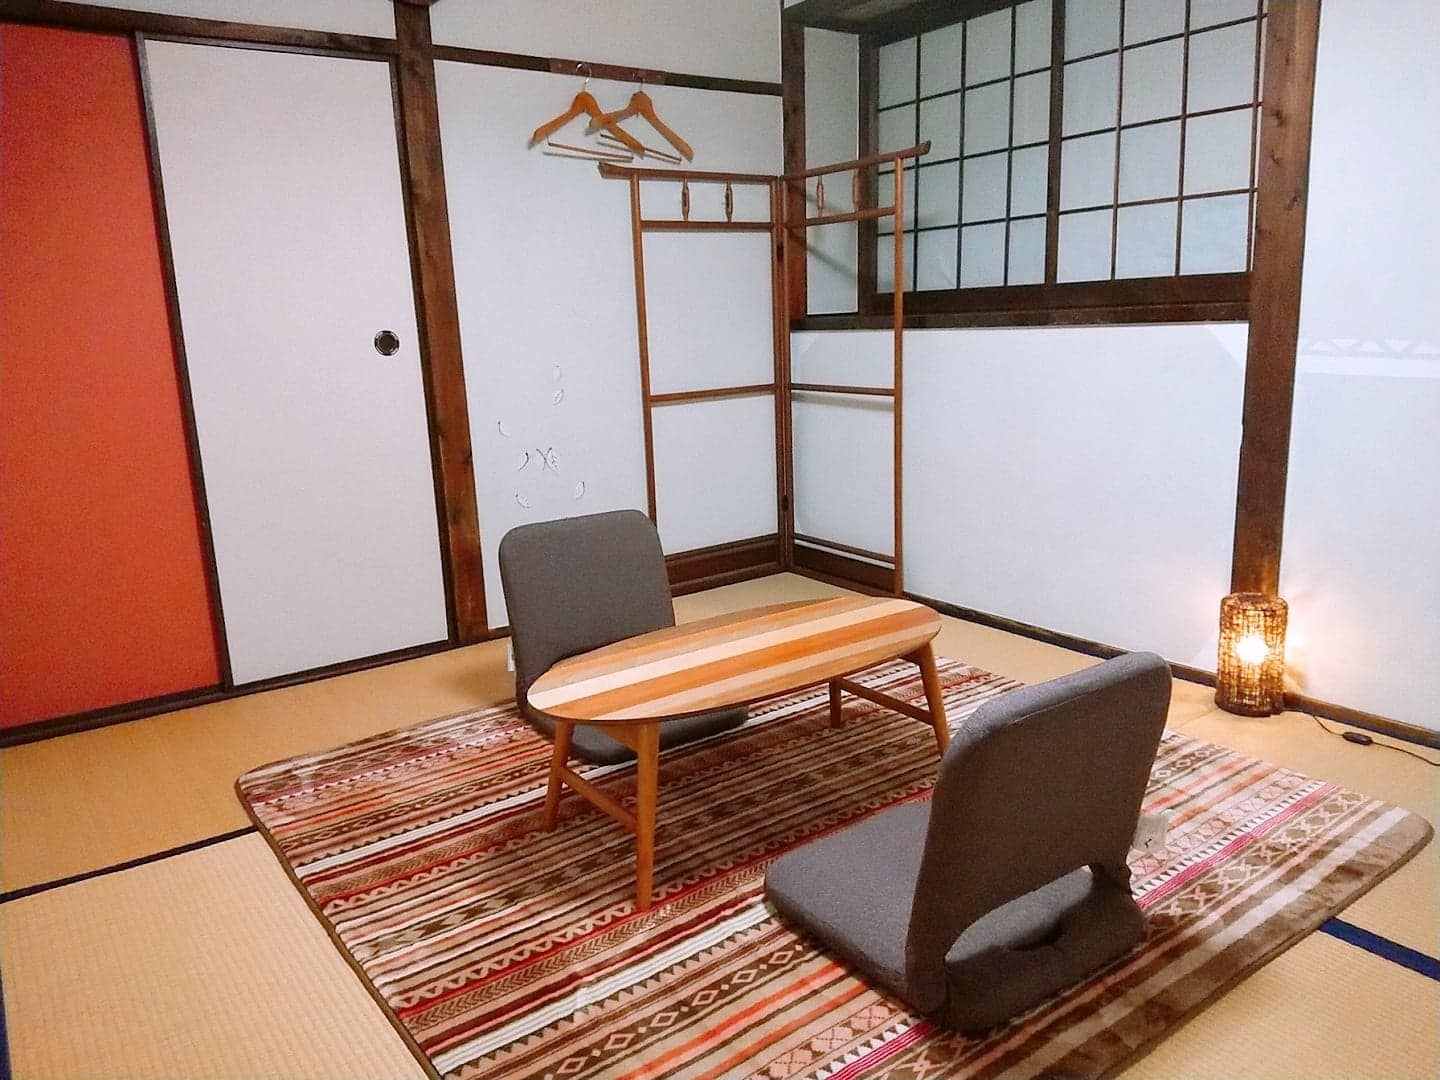 [ตัวอย่างห้องสไตล์ญี่ปุ่นปูเสื่อทาทามิ 6 ห้อง] แม้จะเล็กแต่ก็ใช้เวลาพักผ่อนได้อย่างเต็มที่